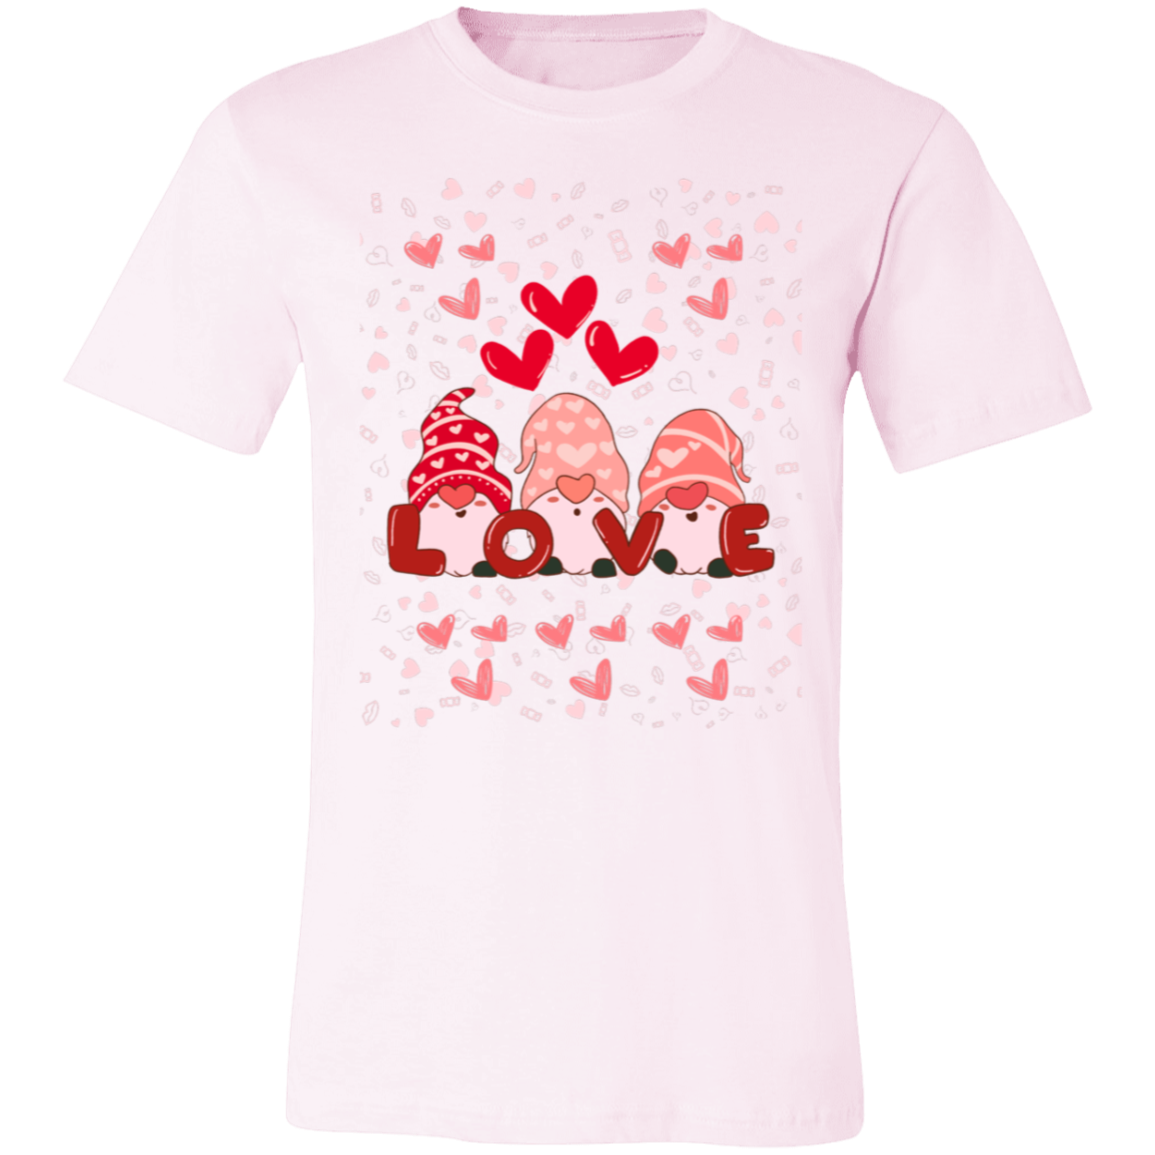 LOVE Unisex Jersey Short-Sleeve T-Shirt